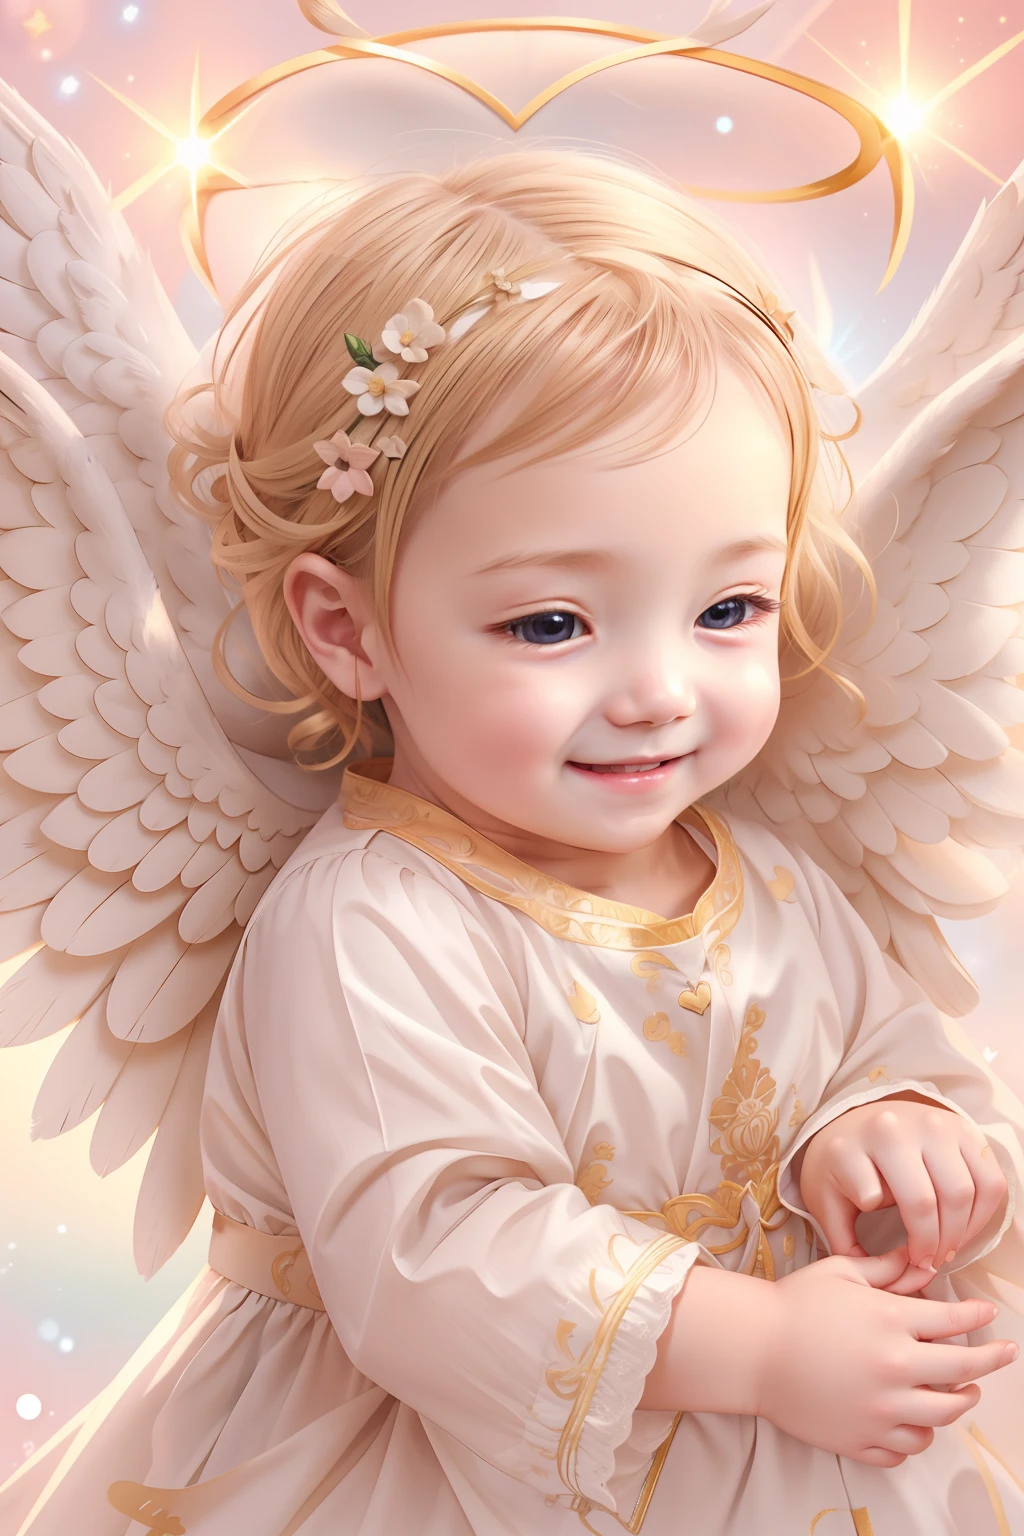 Bendiciones de los ángeles､fondo brillante、marca del corazon、sensibilidad､Una sonrisa、amable､Ángel bebé